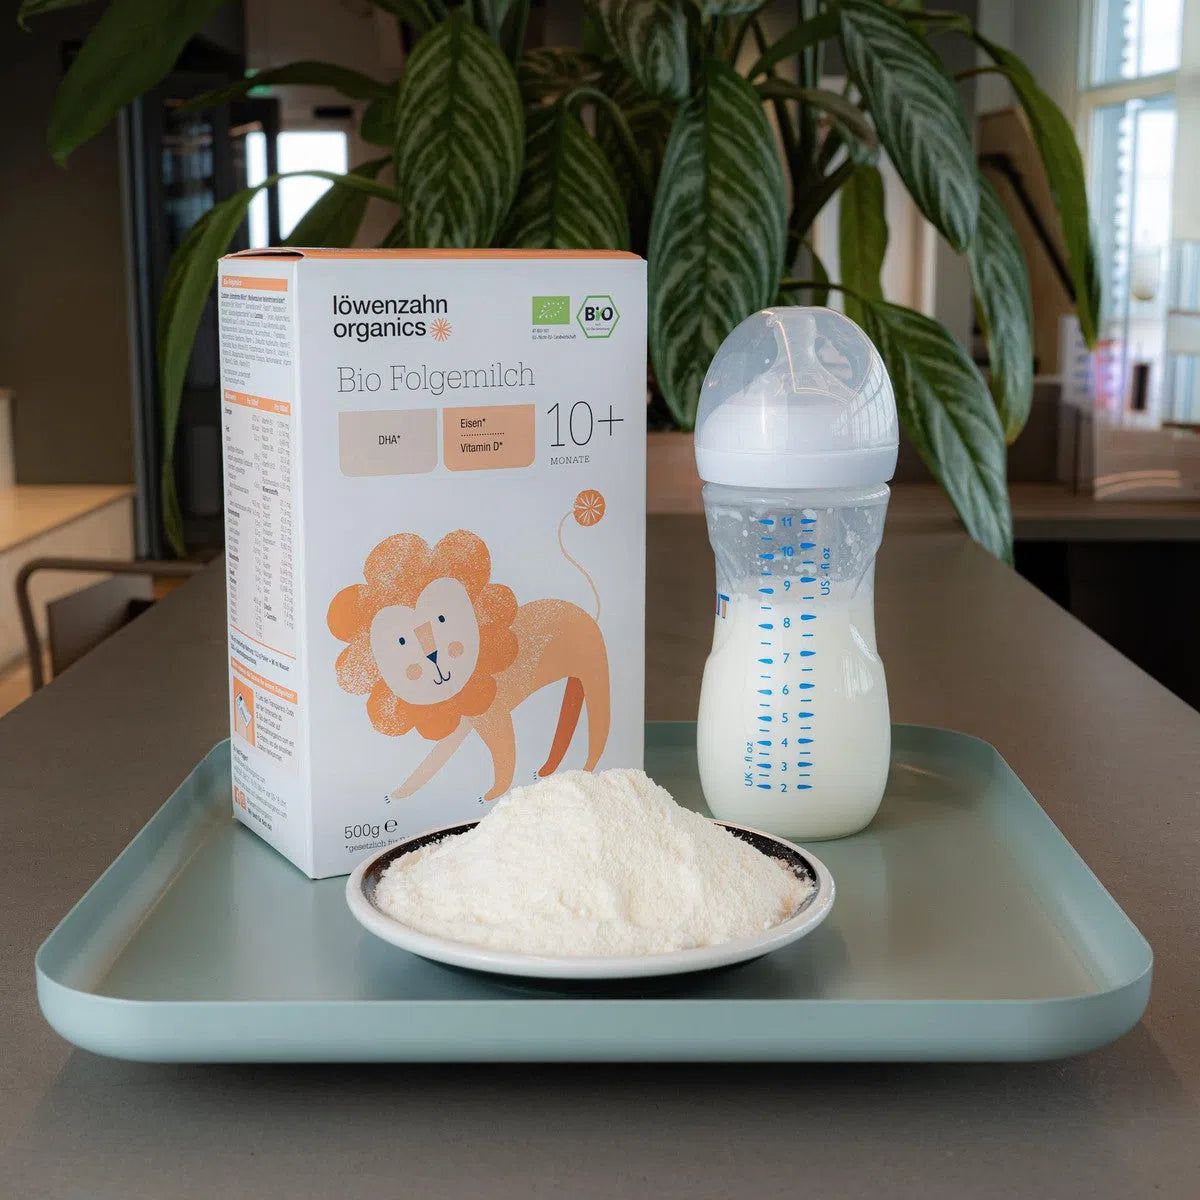 Löwenzahn Organics Stage 3 (10+ Months) Formula | Powdered Baby Formula